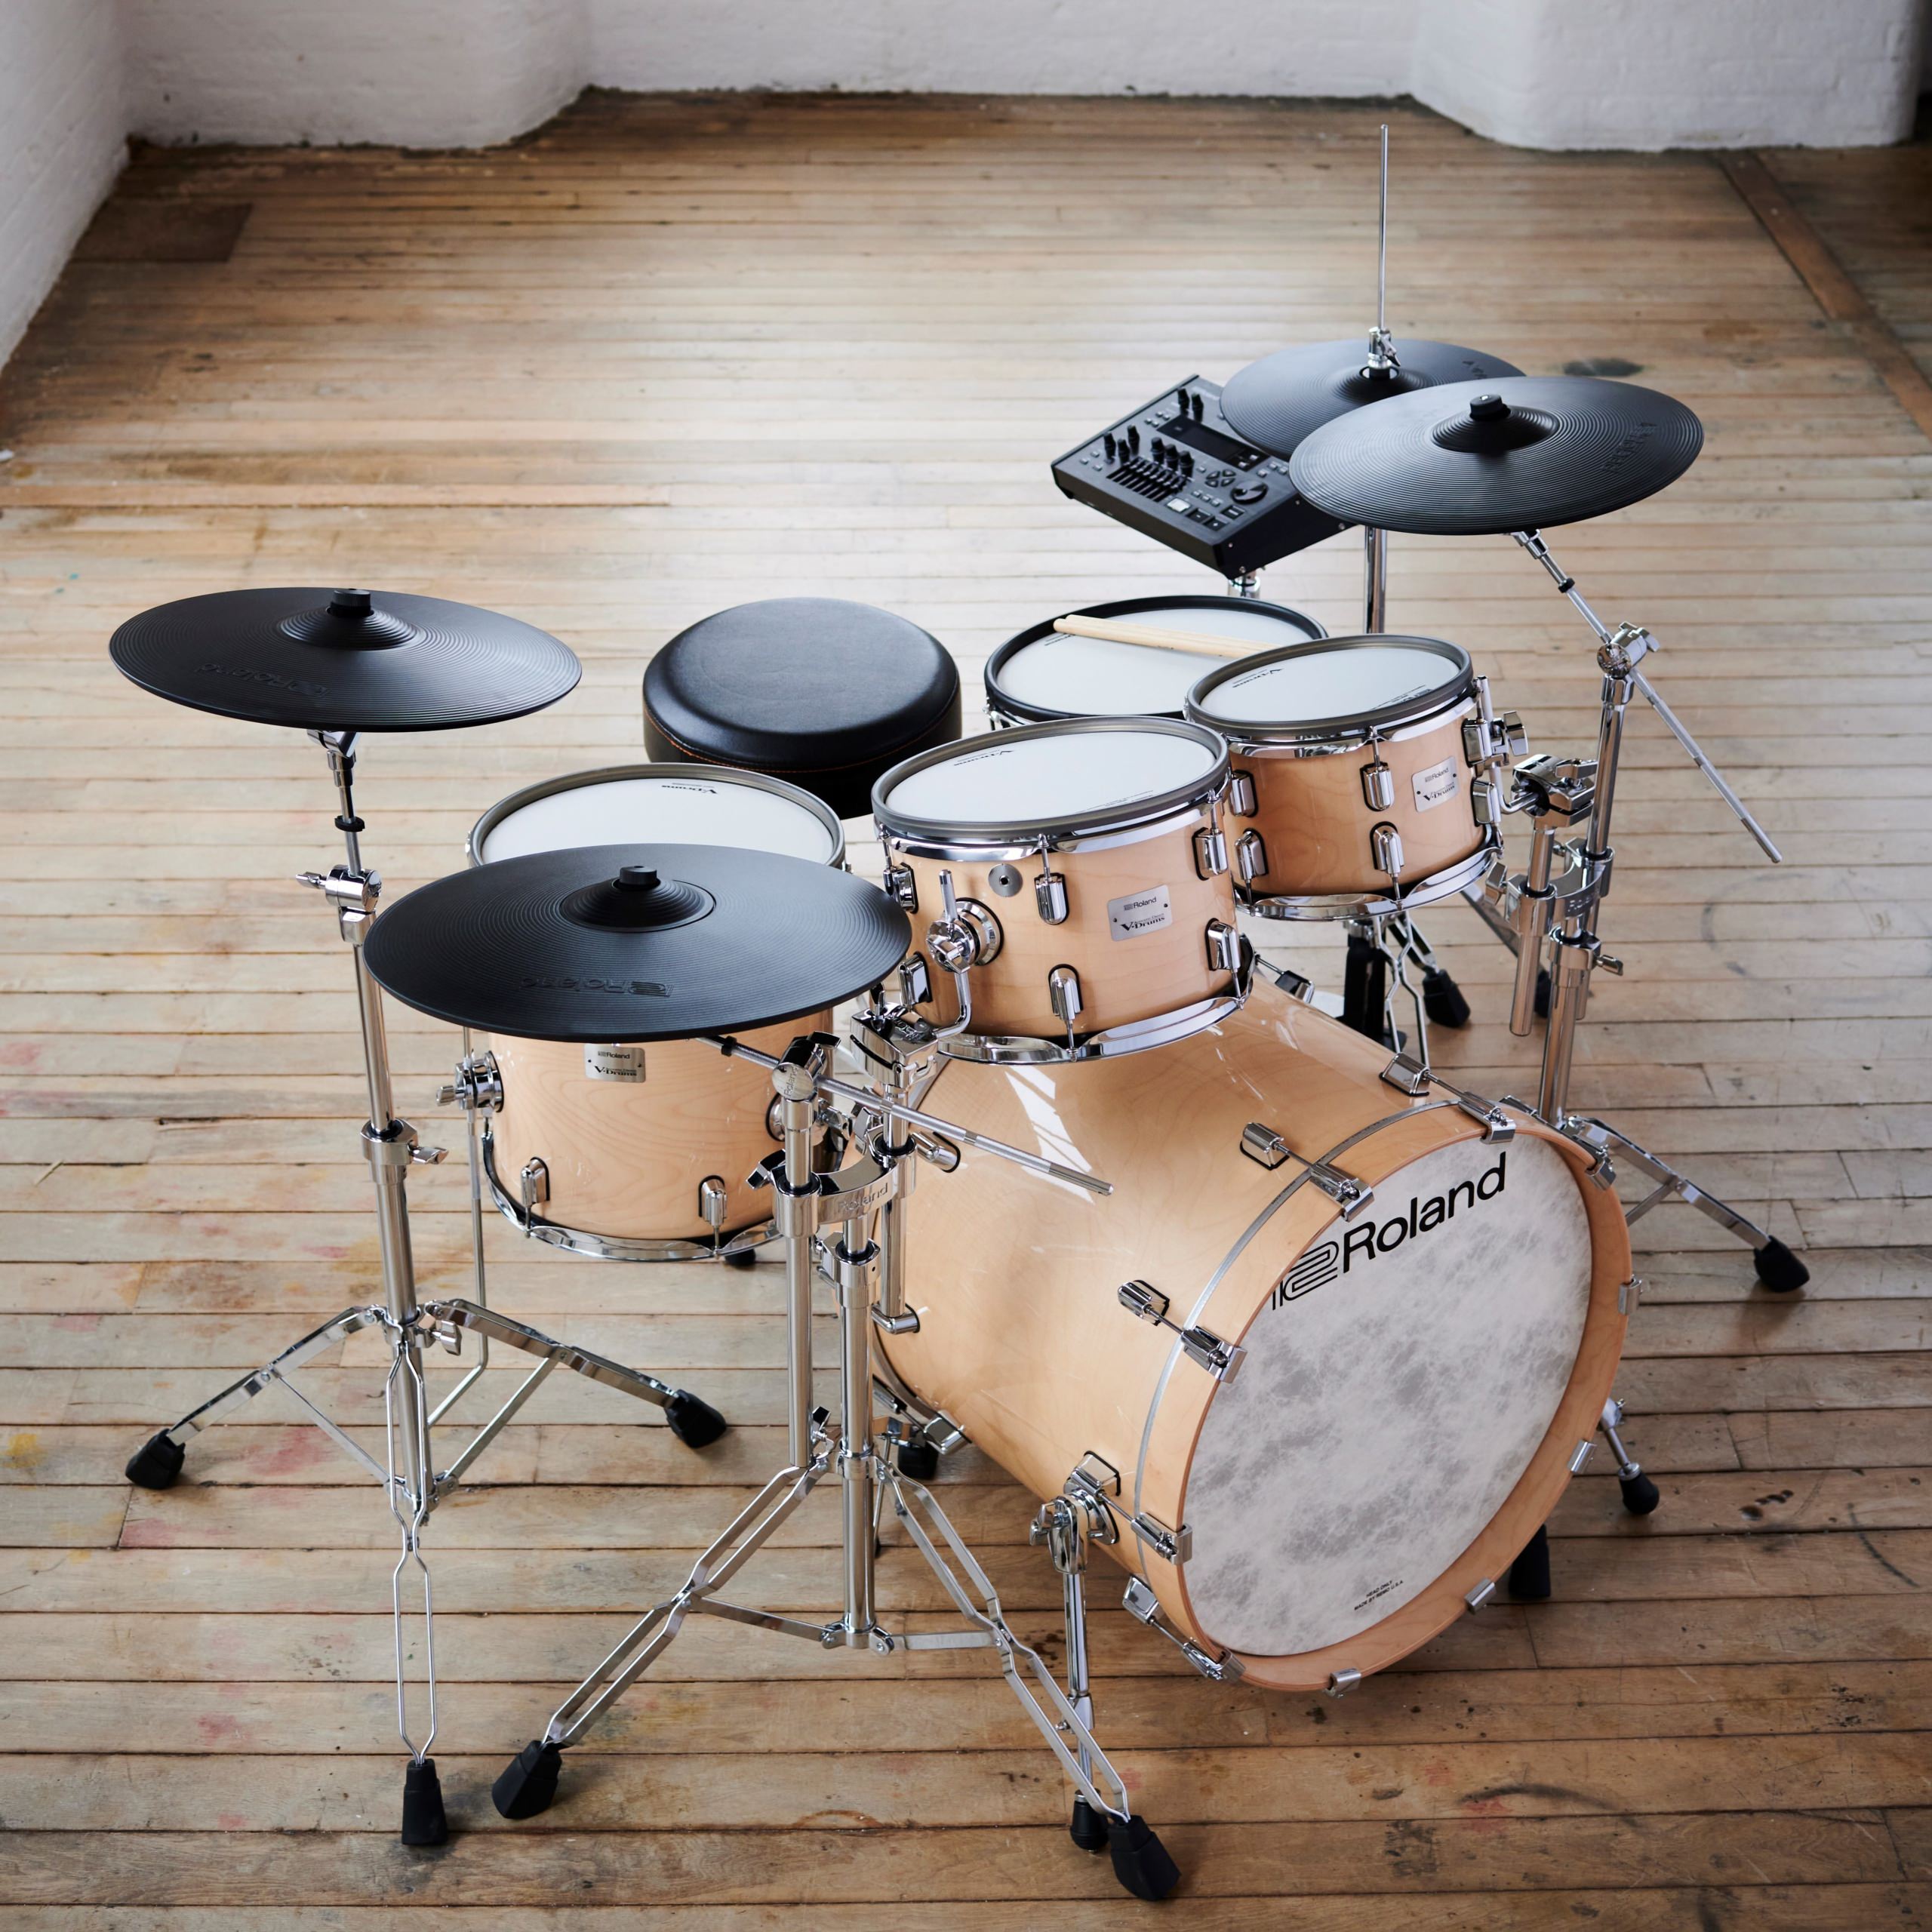 サウンドと演奏表現力を追求した電子ドラム
「Vドラム・シリーズ」のフラッグシップ・モデルを発売